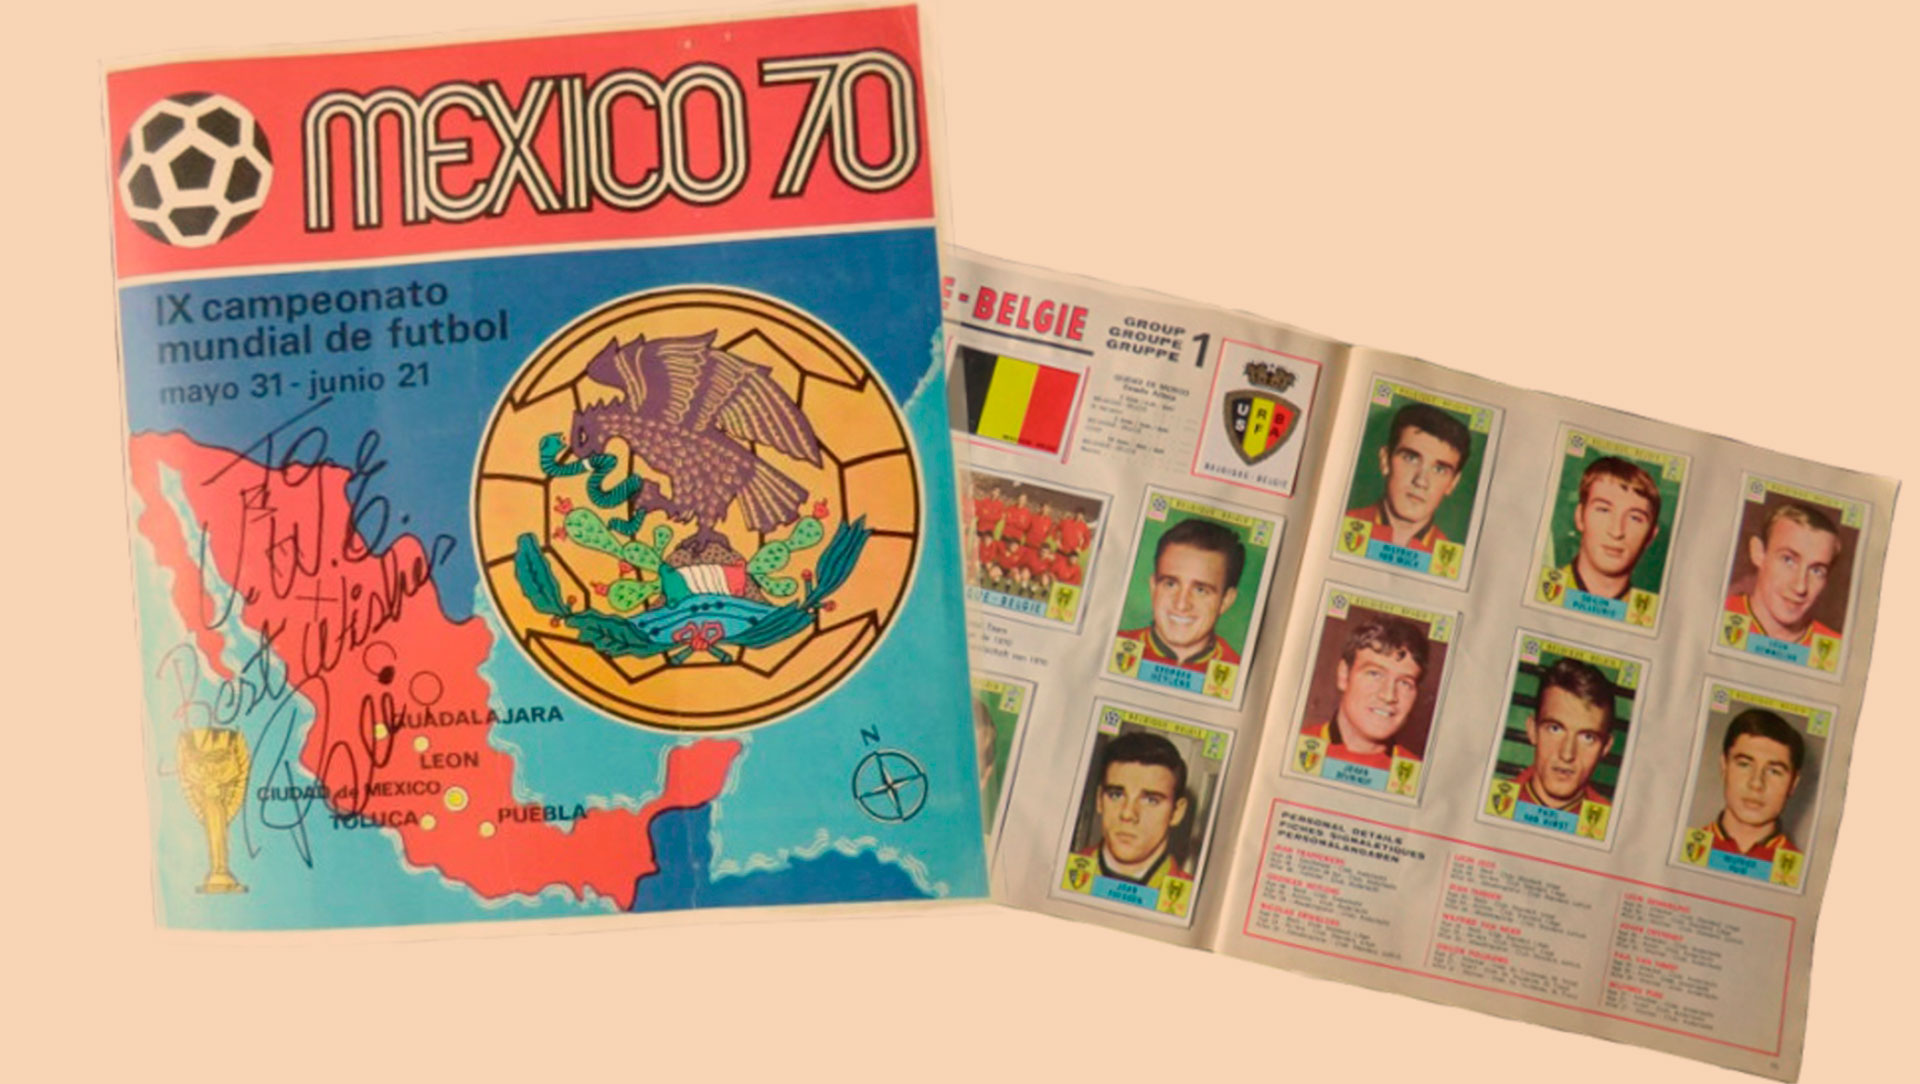 México 70 fue el primer álbum de Panini de un mundial. Al año siguiente, lanzaron los álbumes con stickers autoadhesivos en la Calciatori del fútbol italiano